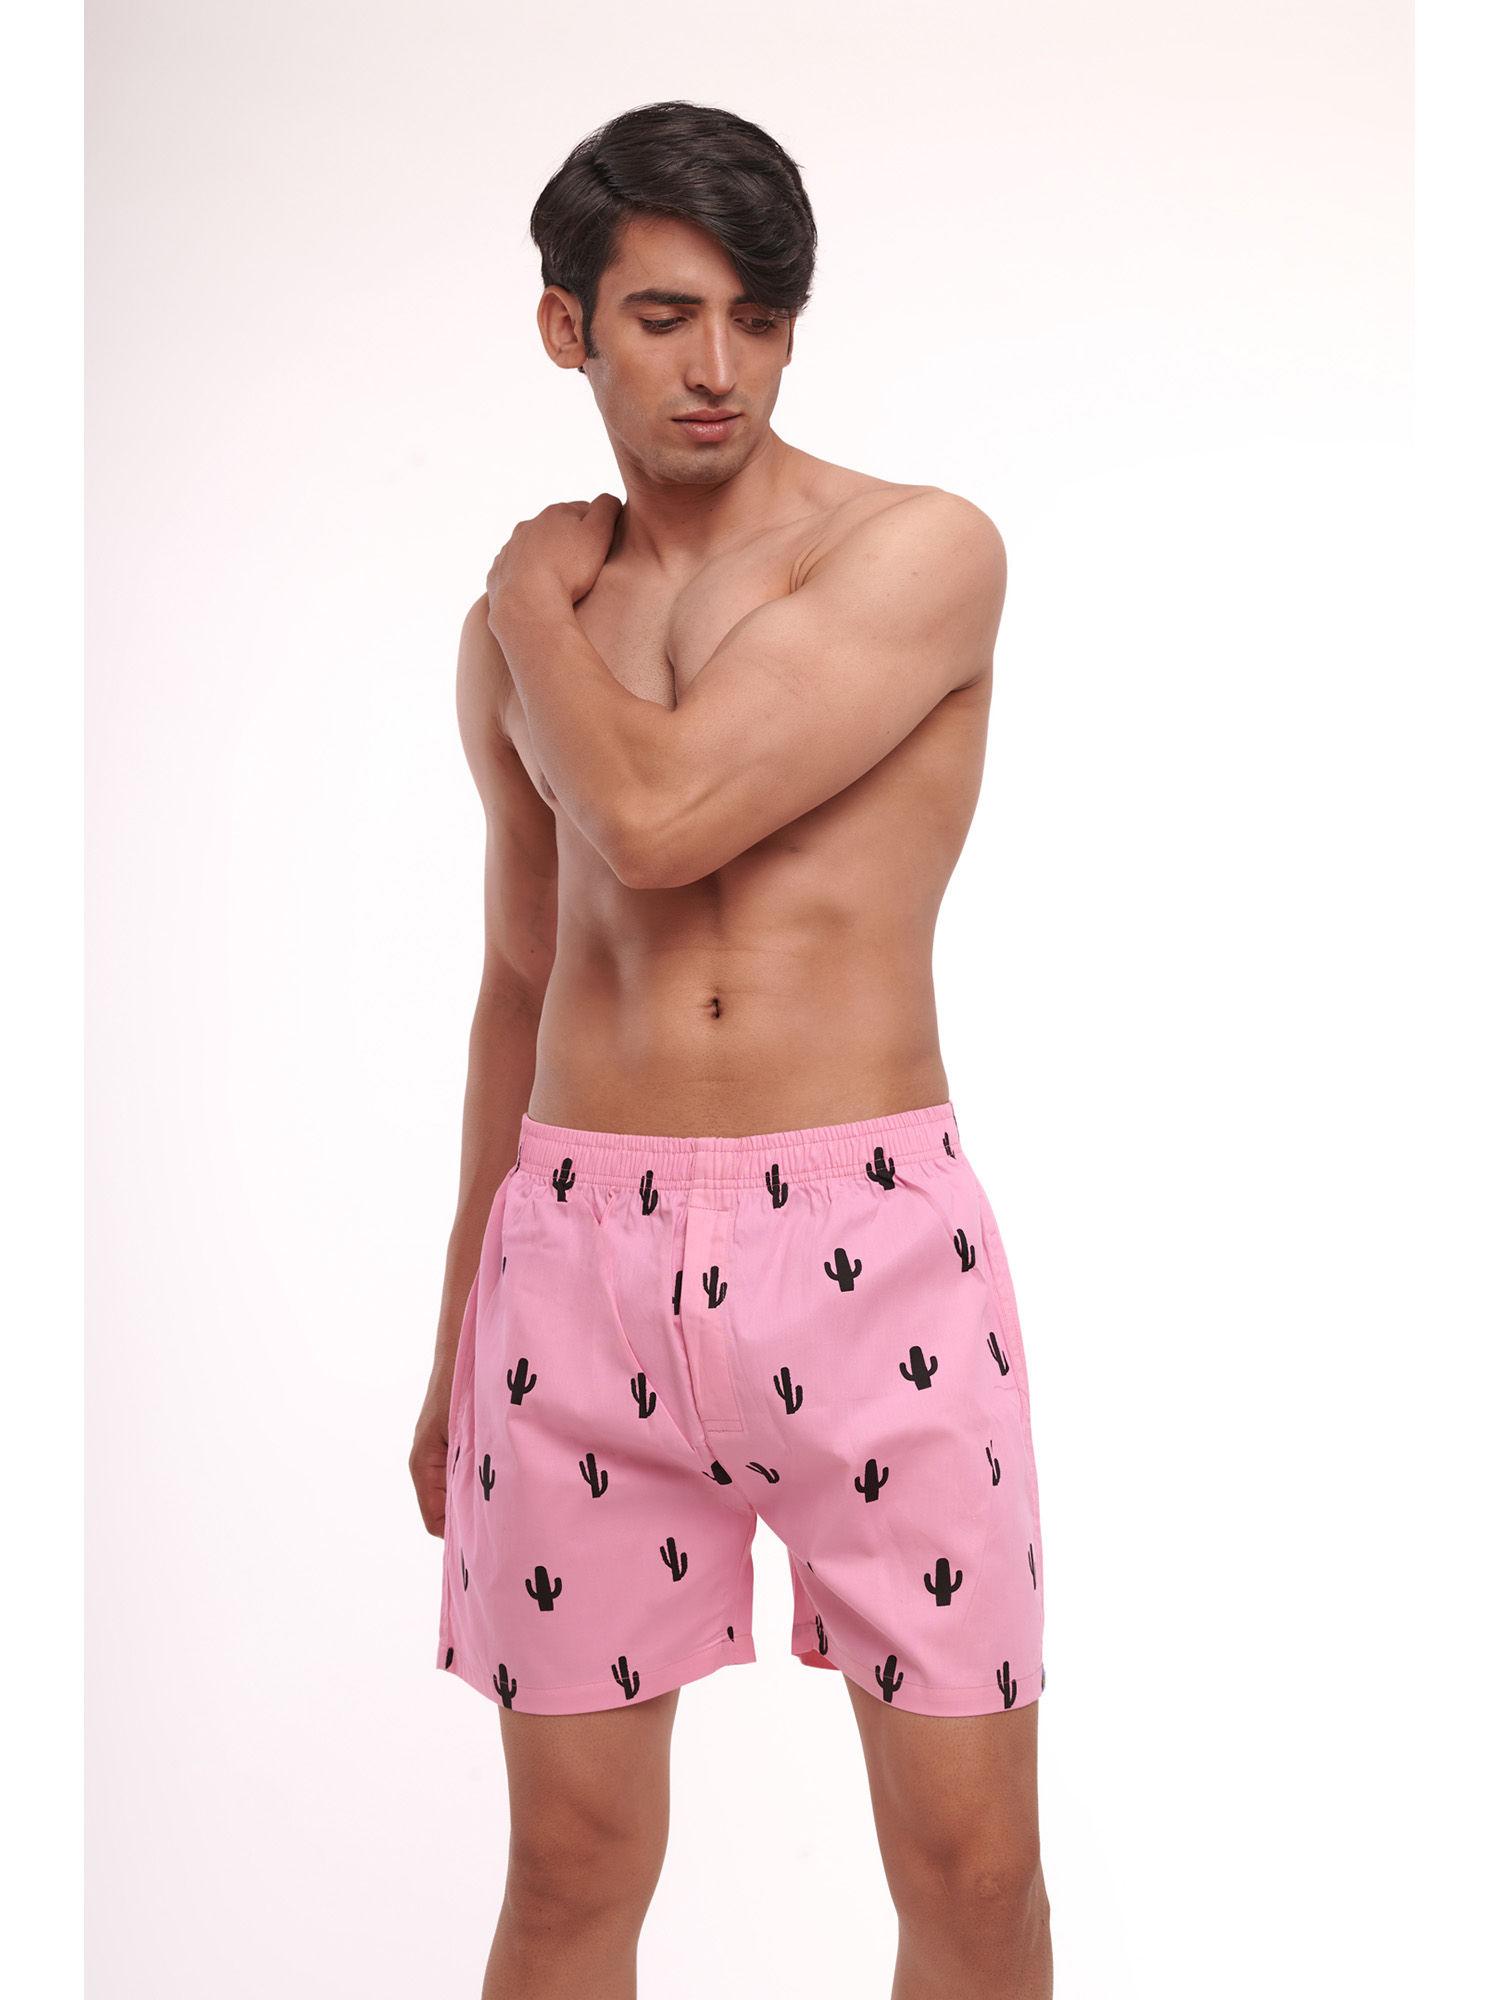 men's cotton printed boxer shorts-pink pink